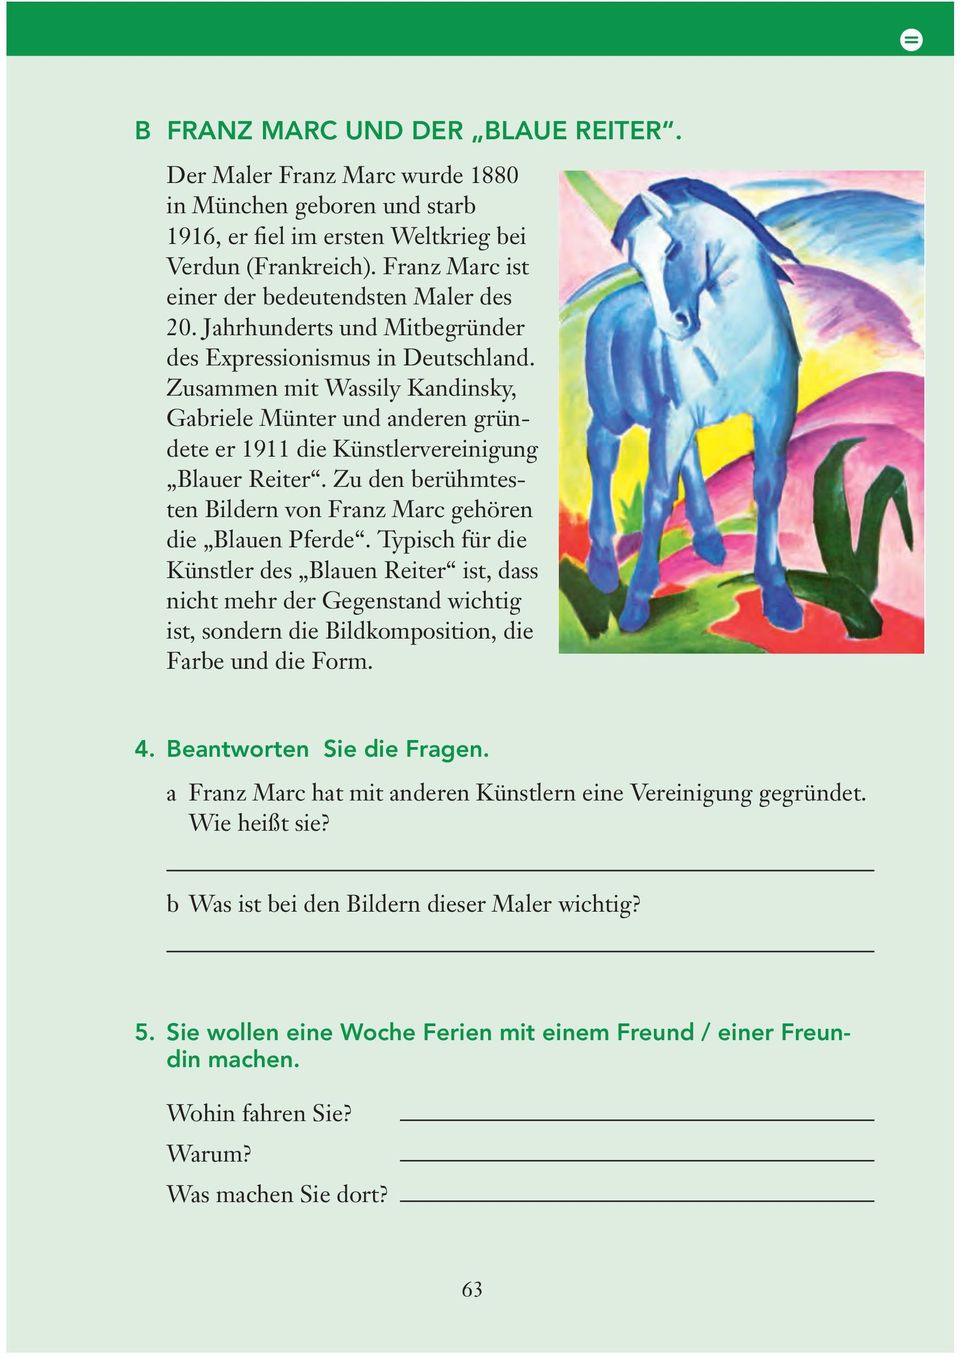 Zusammen mit Wassily Kandinsky, Gabriele Münter und anderen gründete er 1911 die Künstlervereinigung Blauer Reiter. Zu den berühmtesten Bildern von Franz Marc gehören die Blauen Pferde.